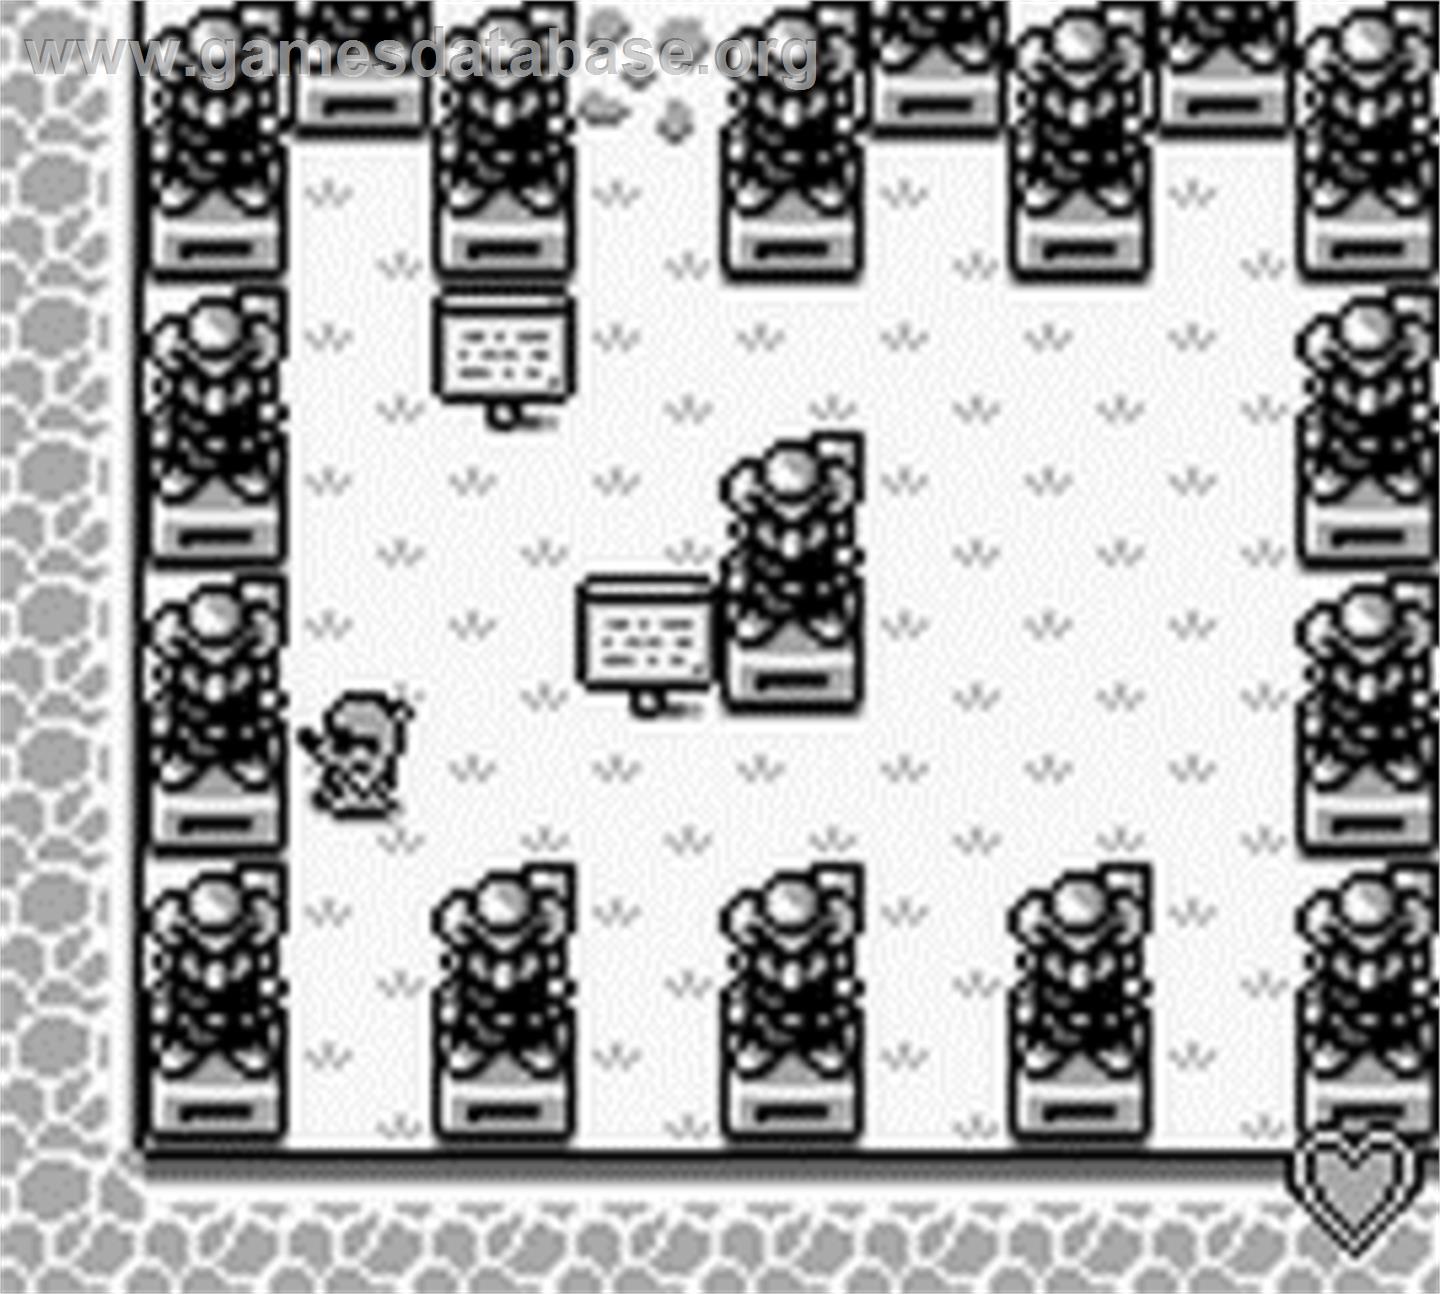 Mole Mania - Nintendo Game Boy - Artwork - In Game